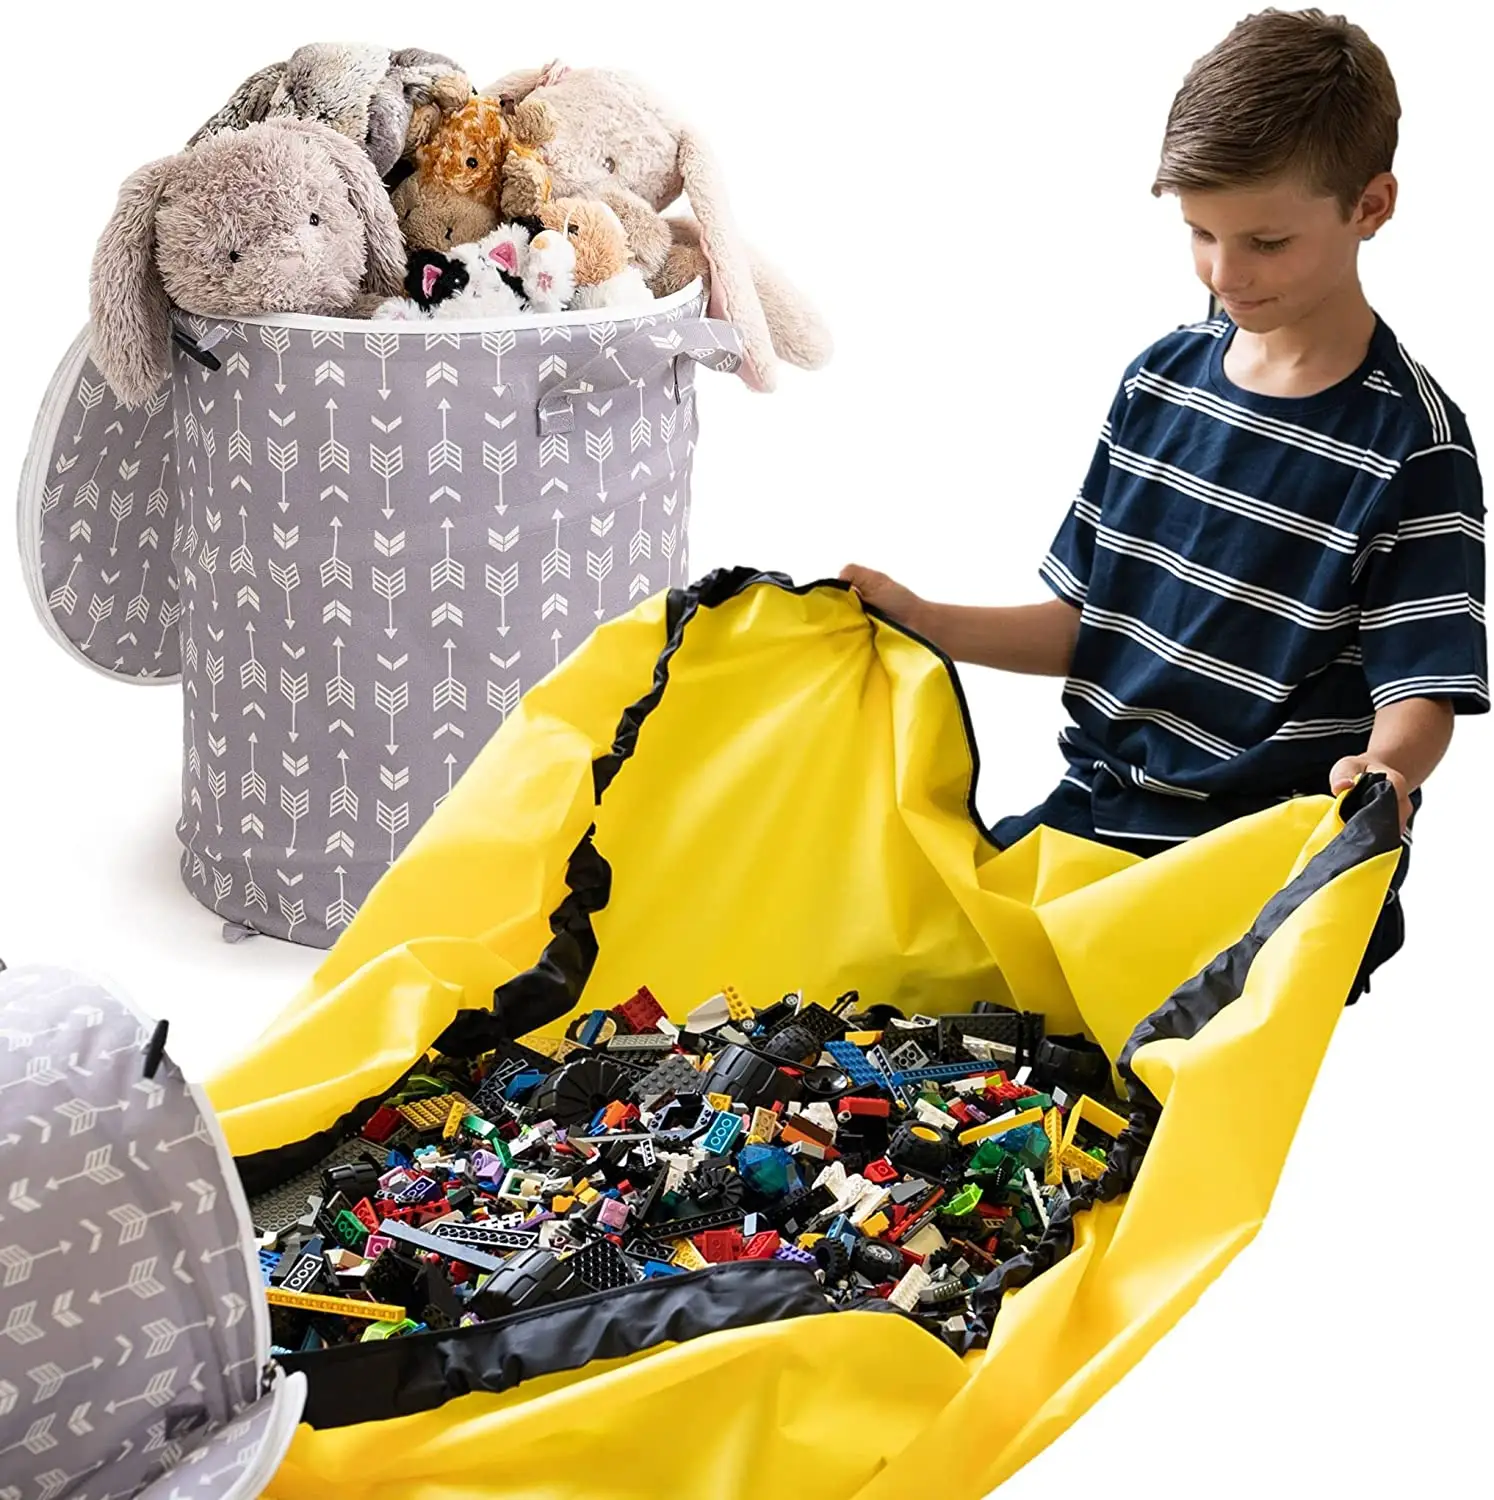 Cesta rápida de cordão para crianças, organizador de peito com zíper, sacola dobrável para armazenamento de brinquedos com tapete de brincar, grande capacidade